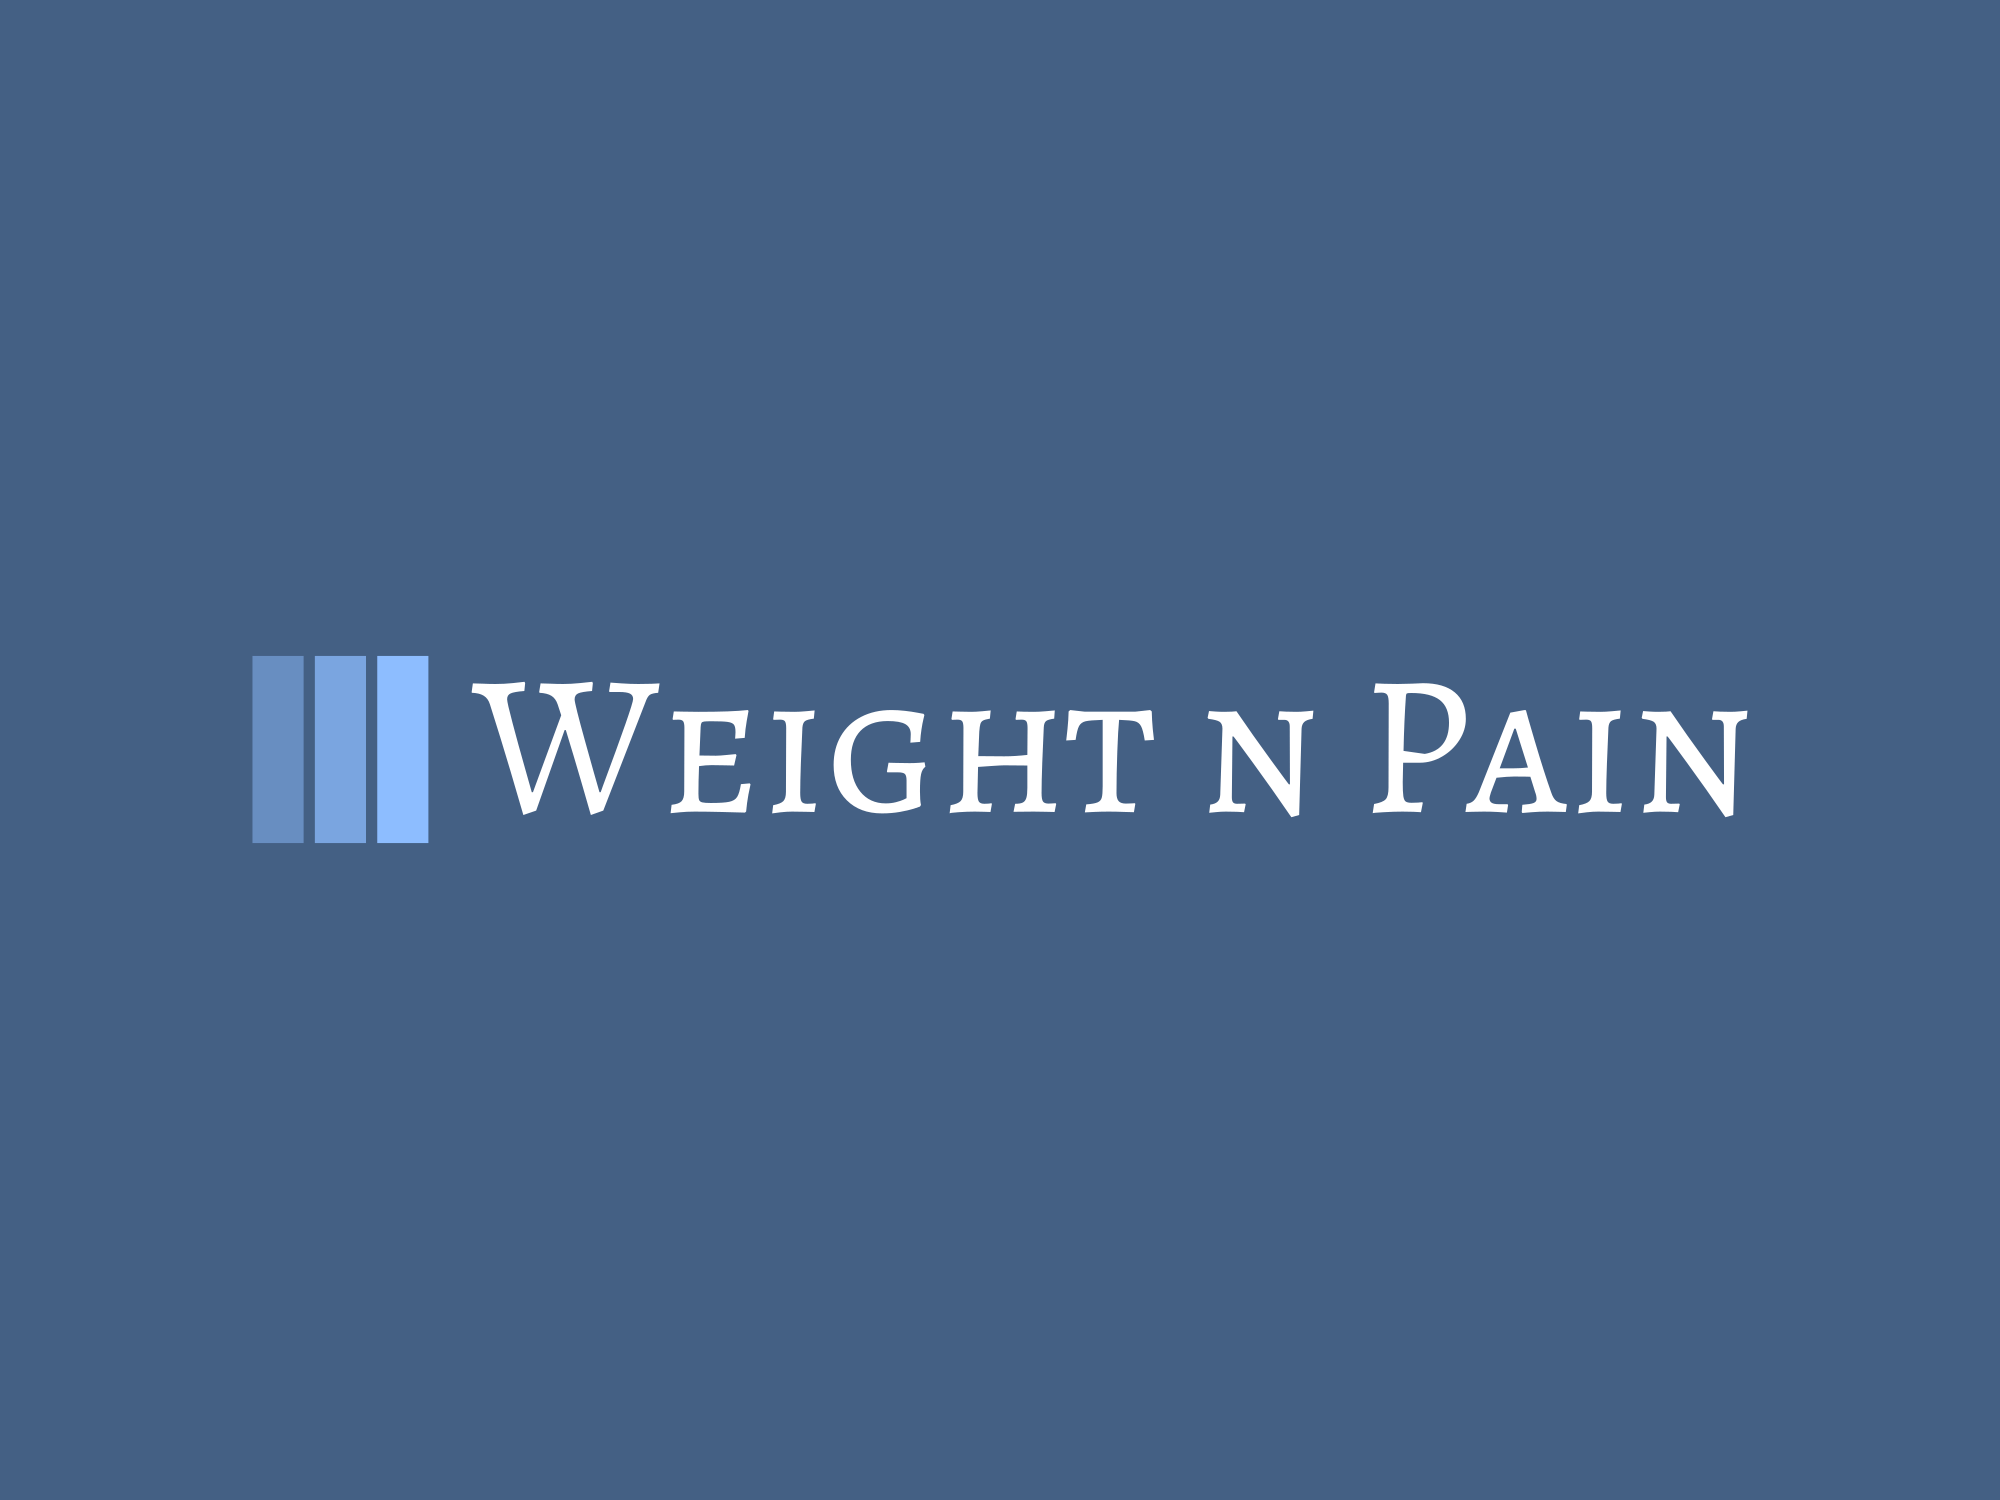 WeightnPain cover